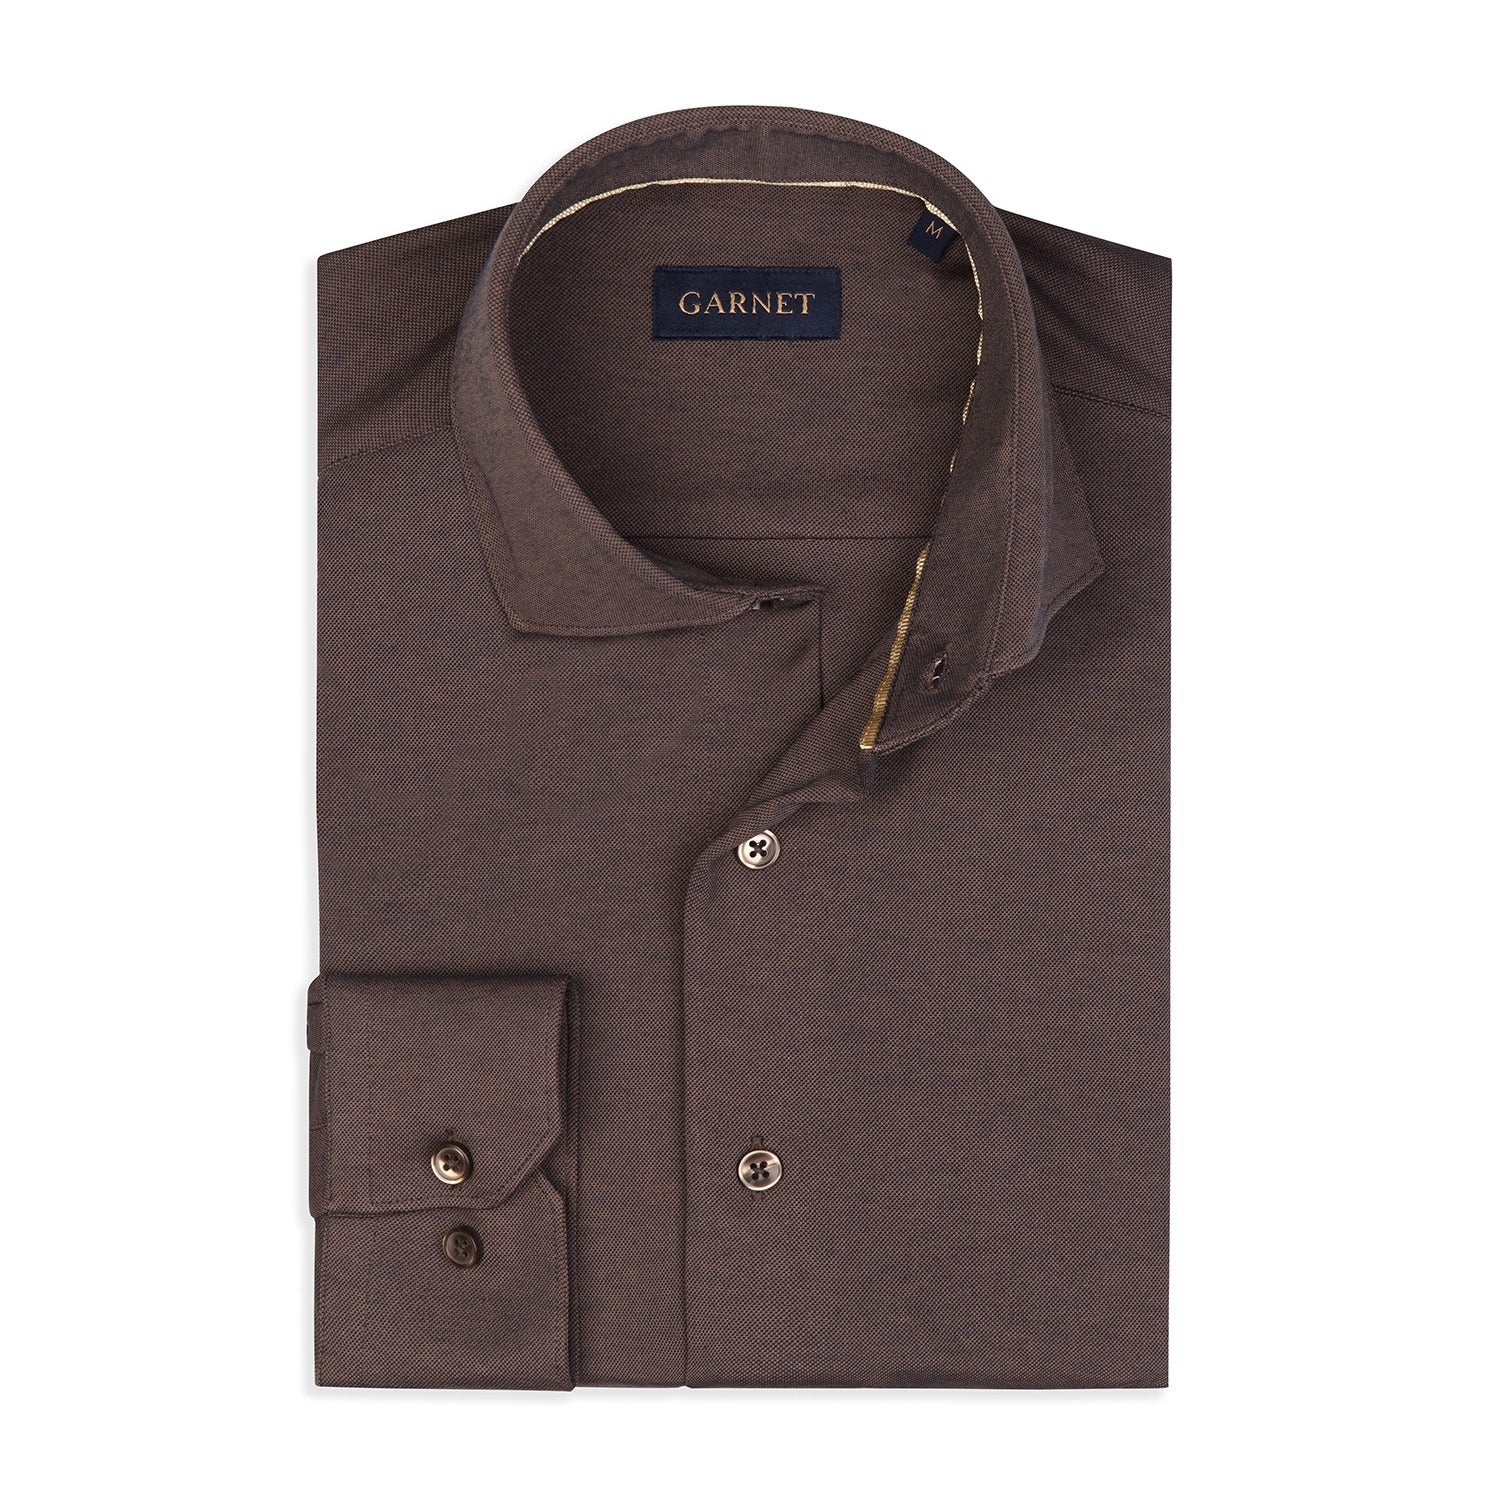 Garnet Italian Collar Jersey Long Sleeve Button Up Shirt